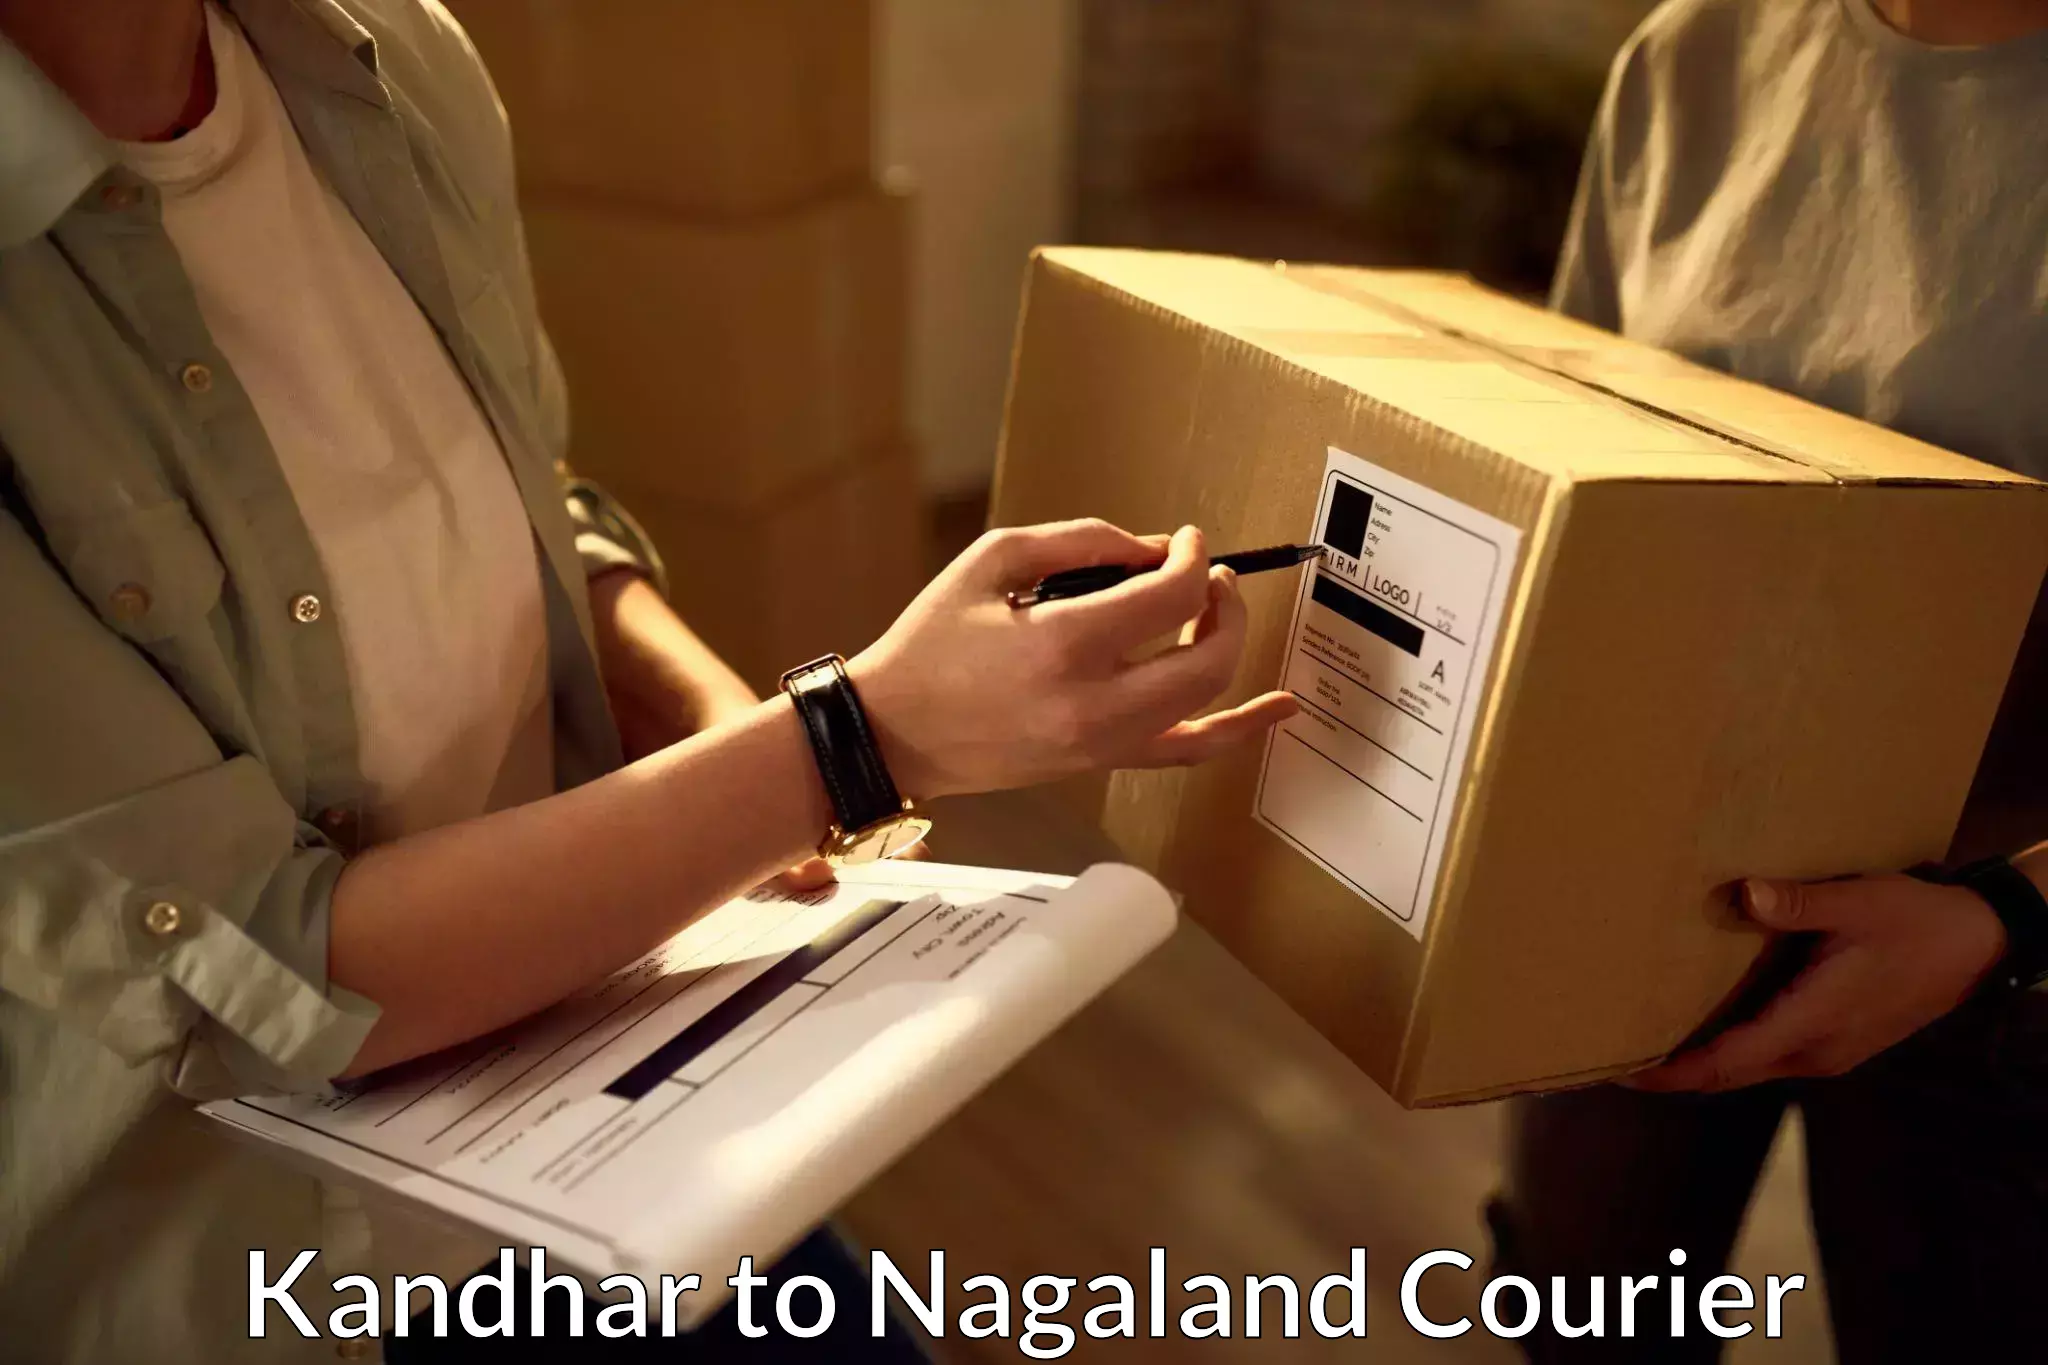 Shipping and handling Kandhar to Nagaland